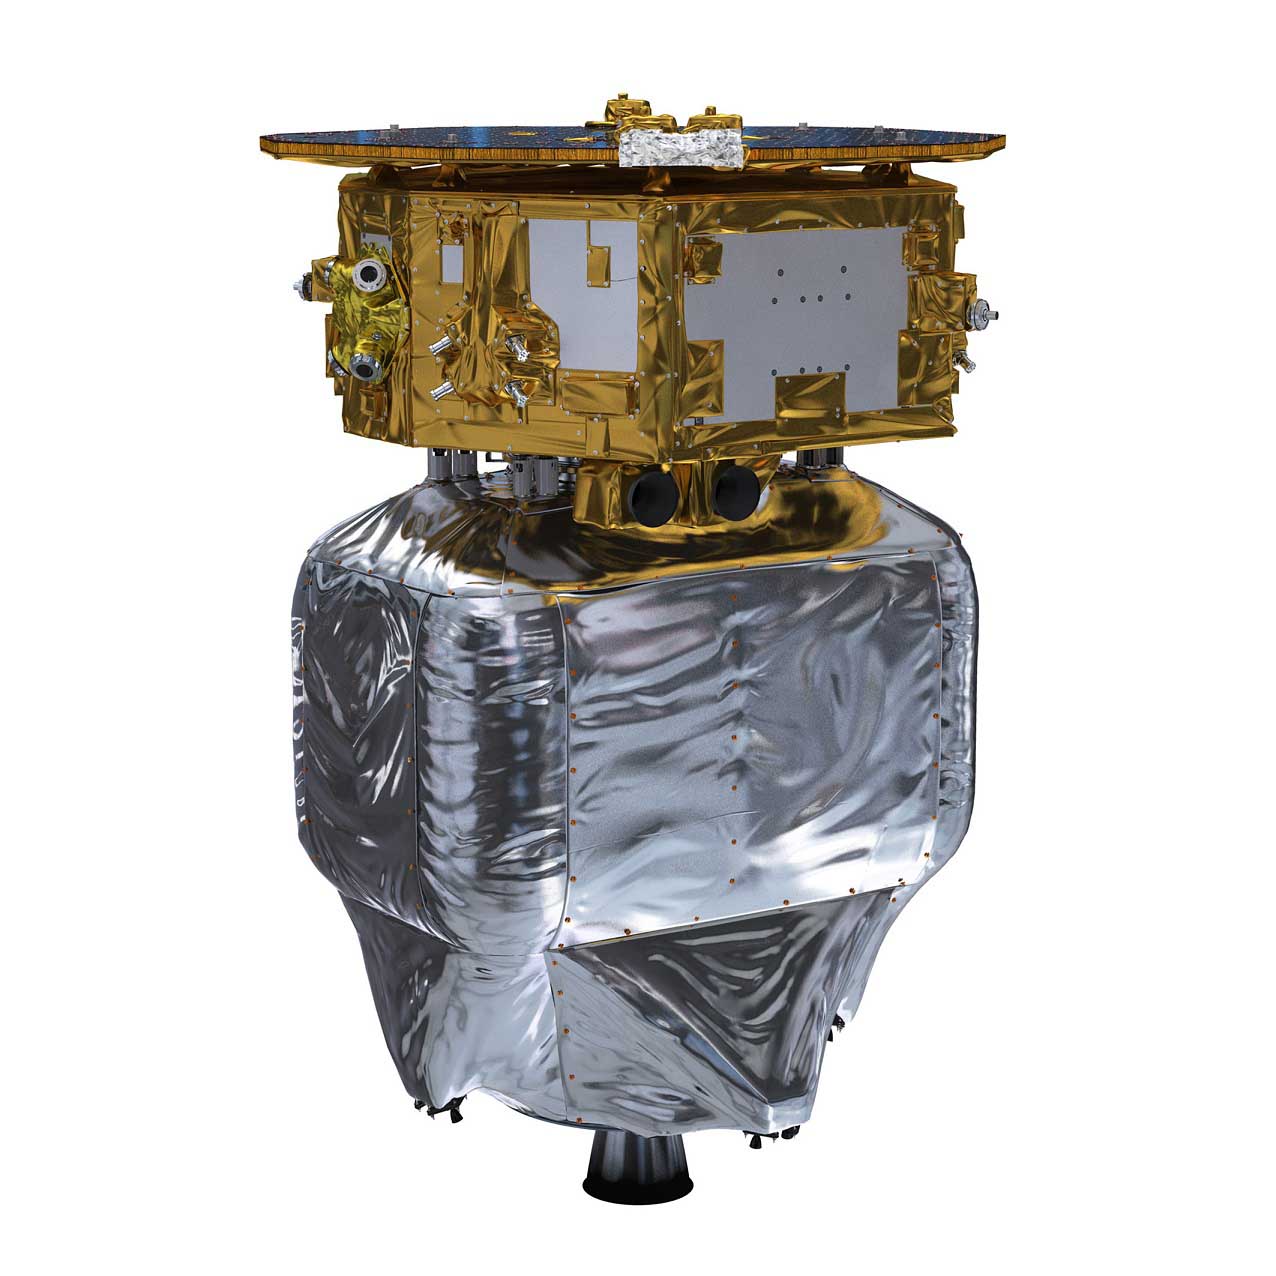 Esa LISA Pathfinder satellite